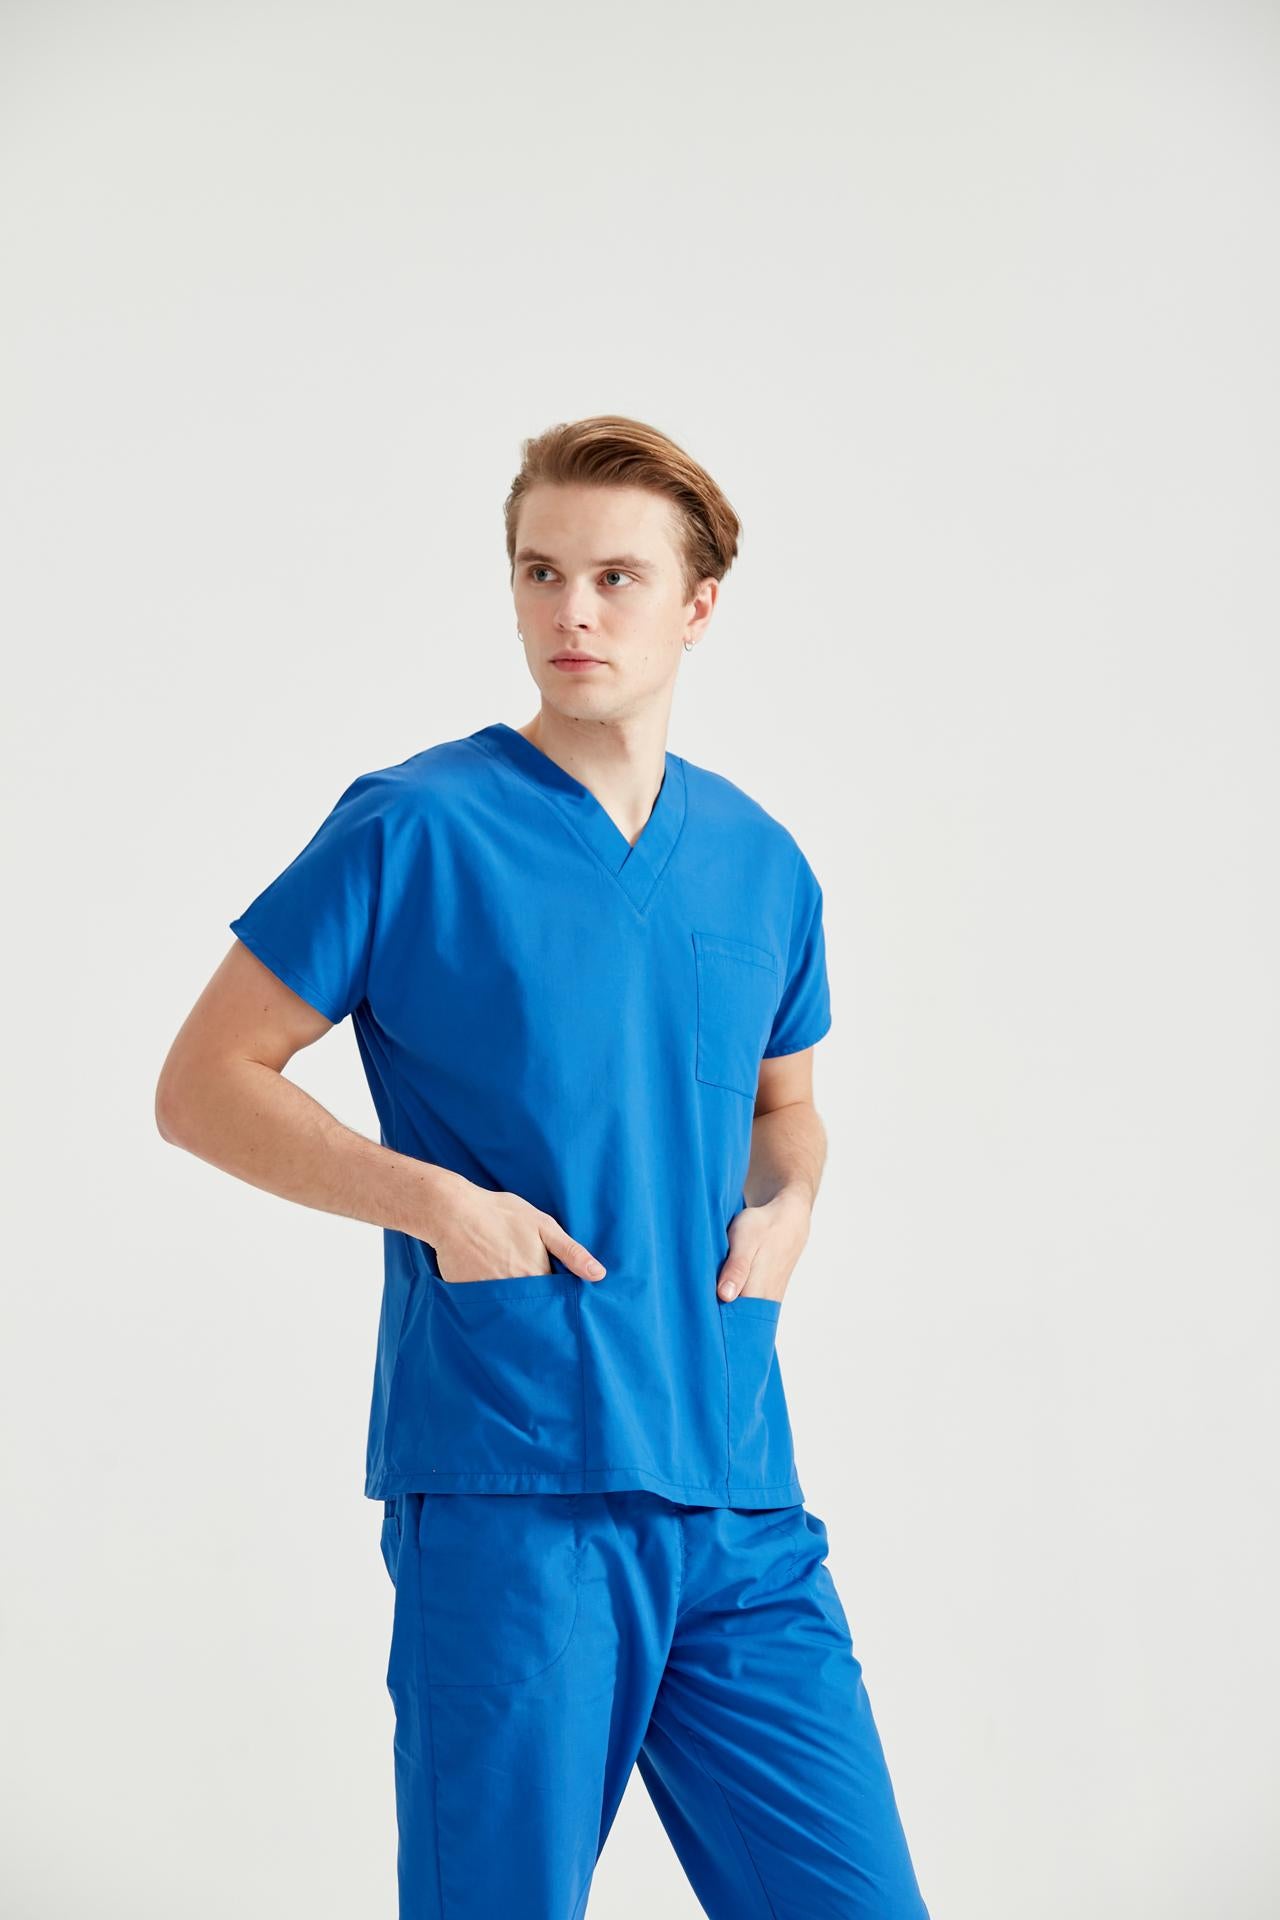 Costum Medical Albastru, Pentru Barbati - Royal - Model Classic